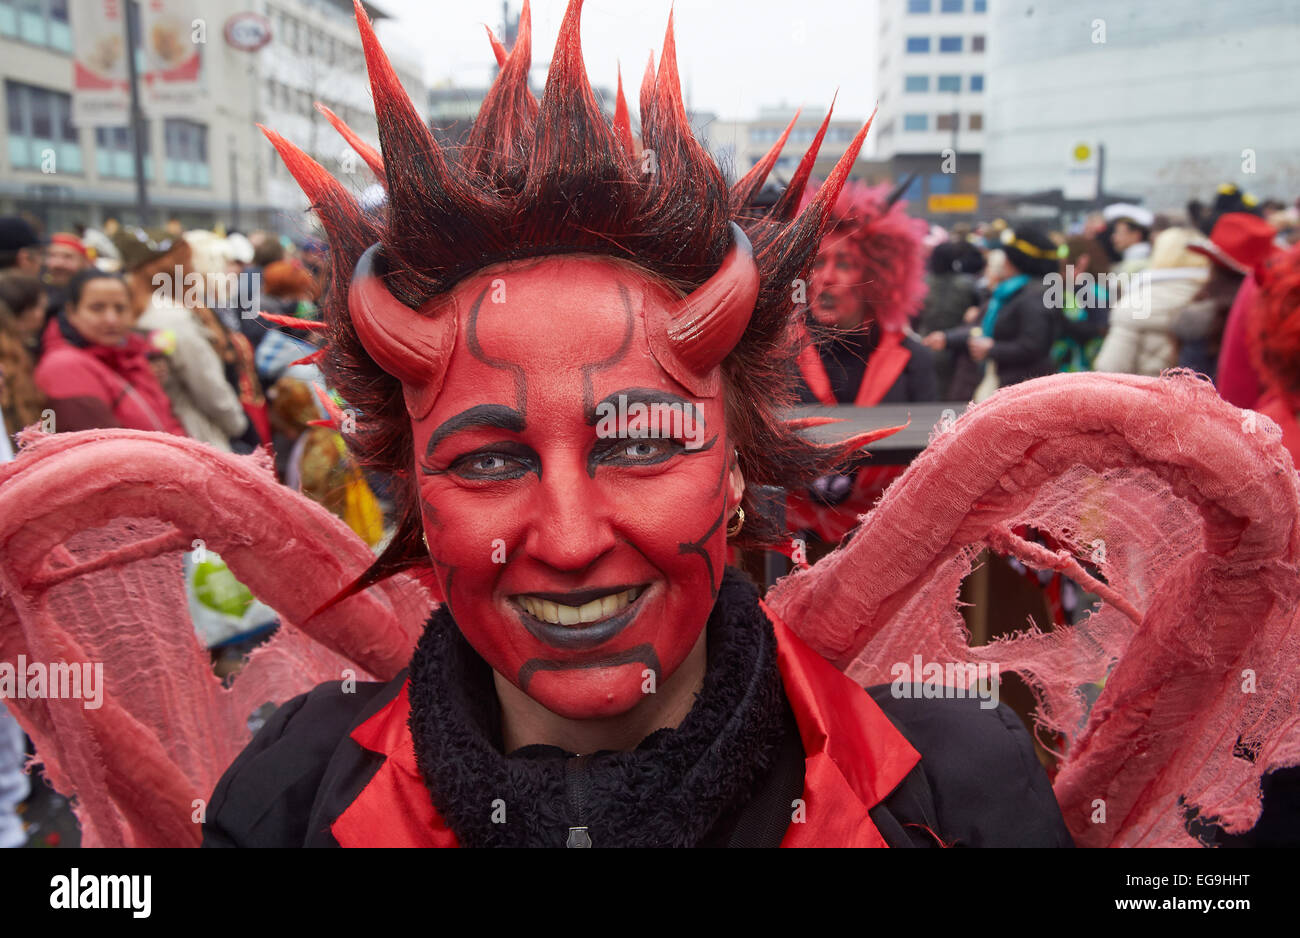 Devil's costume, défilé de carnaval Lundi Gras, Koblenz, Rhénanie-Palatinat, Allemagne Banque D'Images